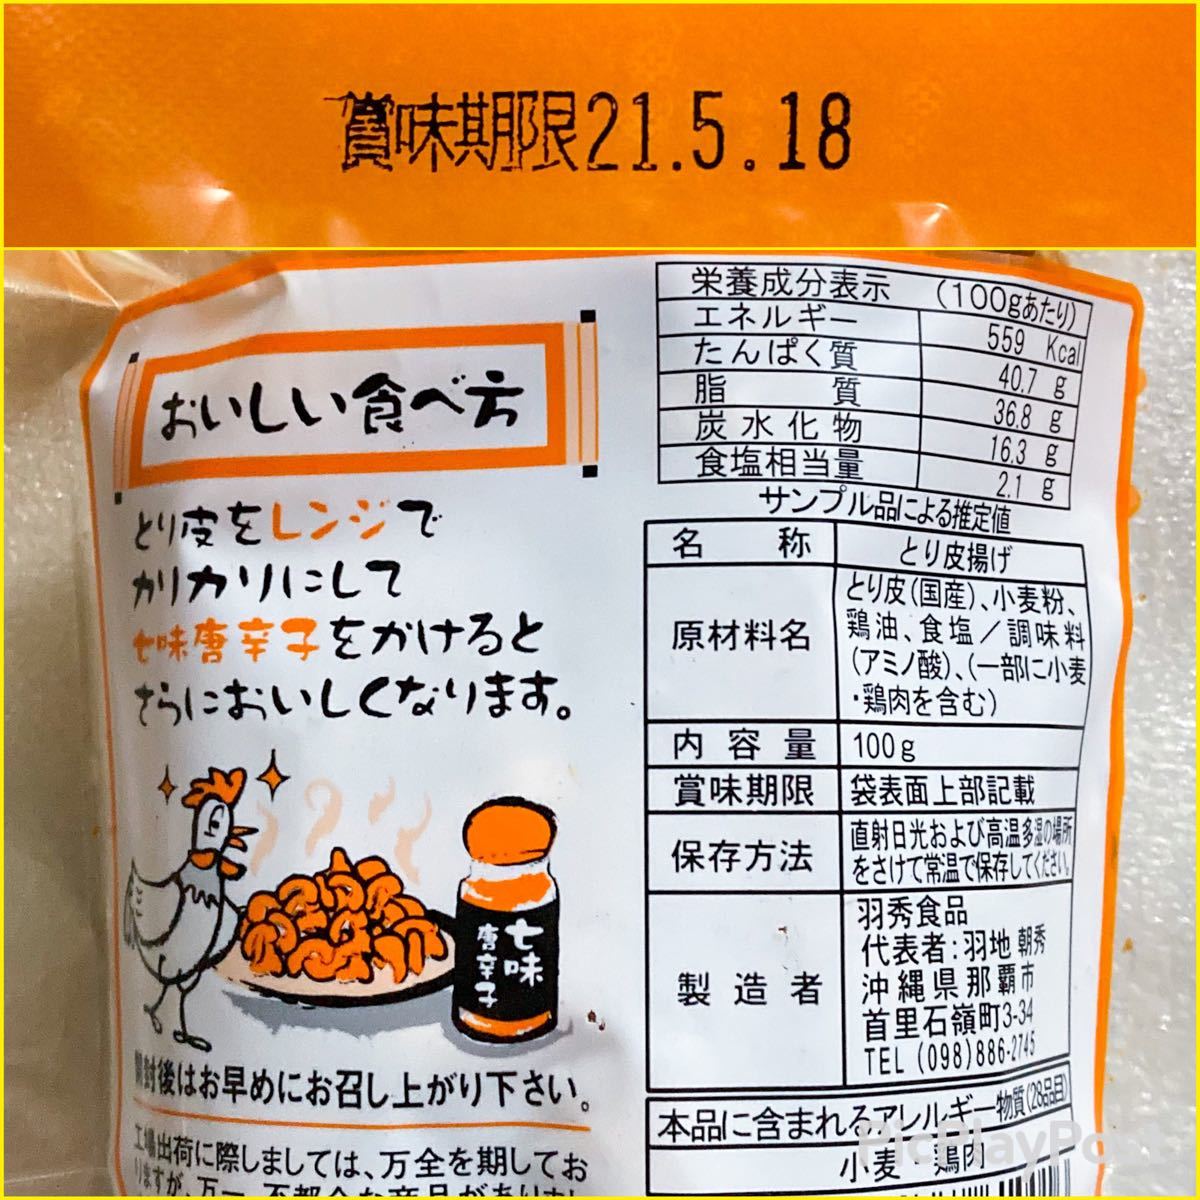 ㊗️大人気商品㊗️沖縄・とり皮３袋セット 沖縄珍味